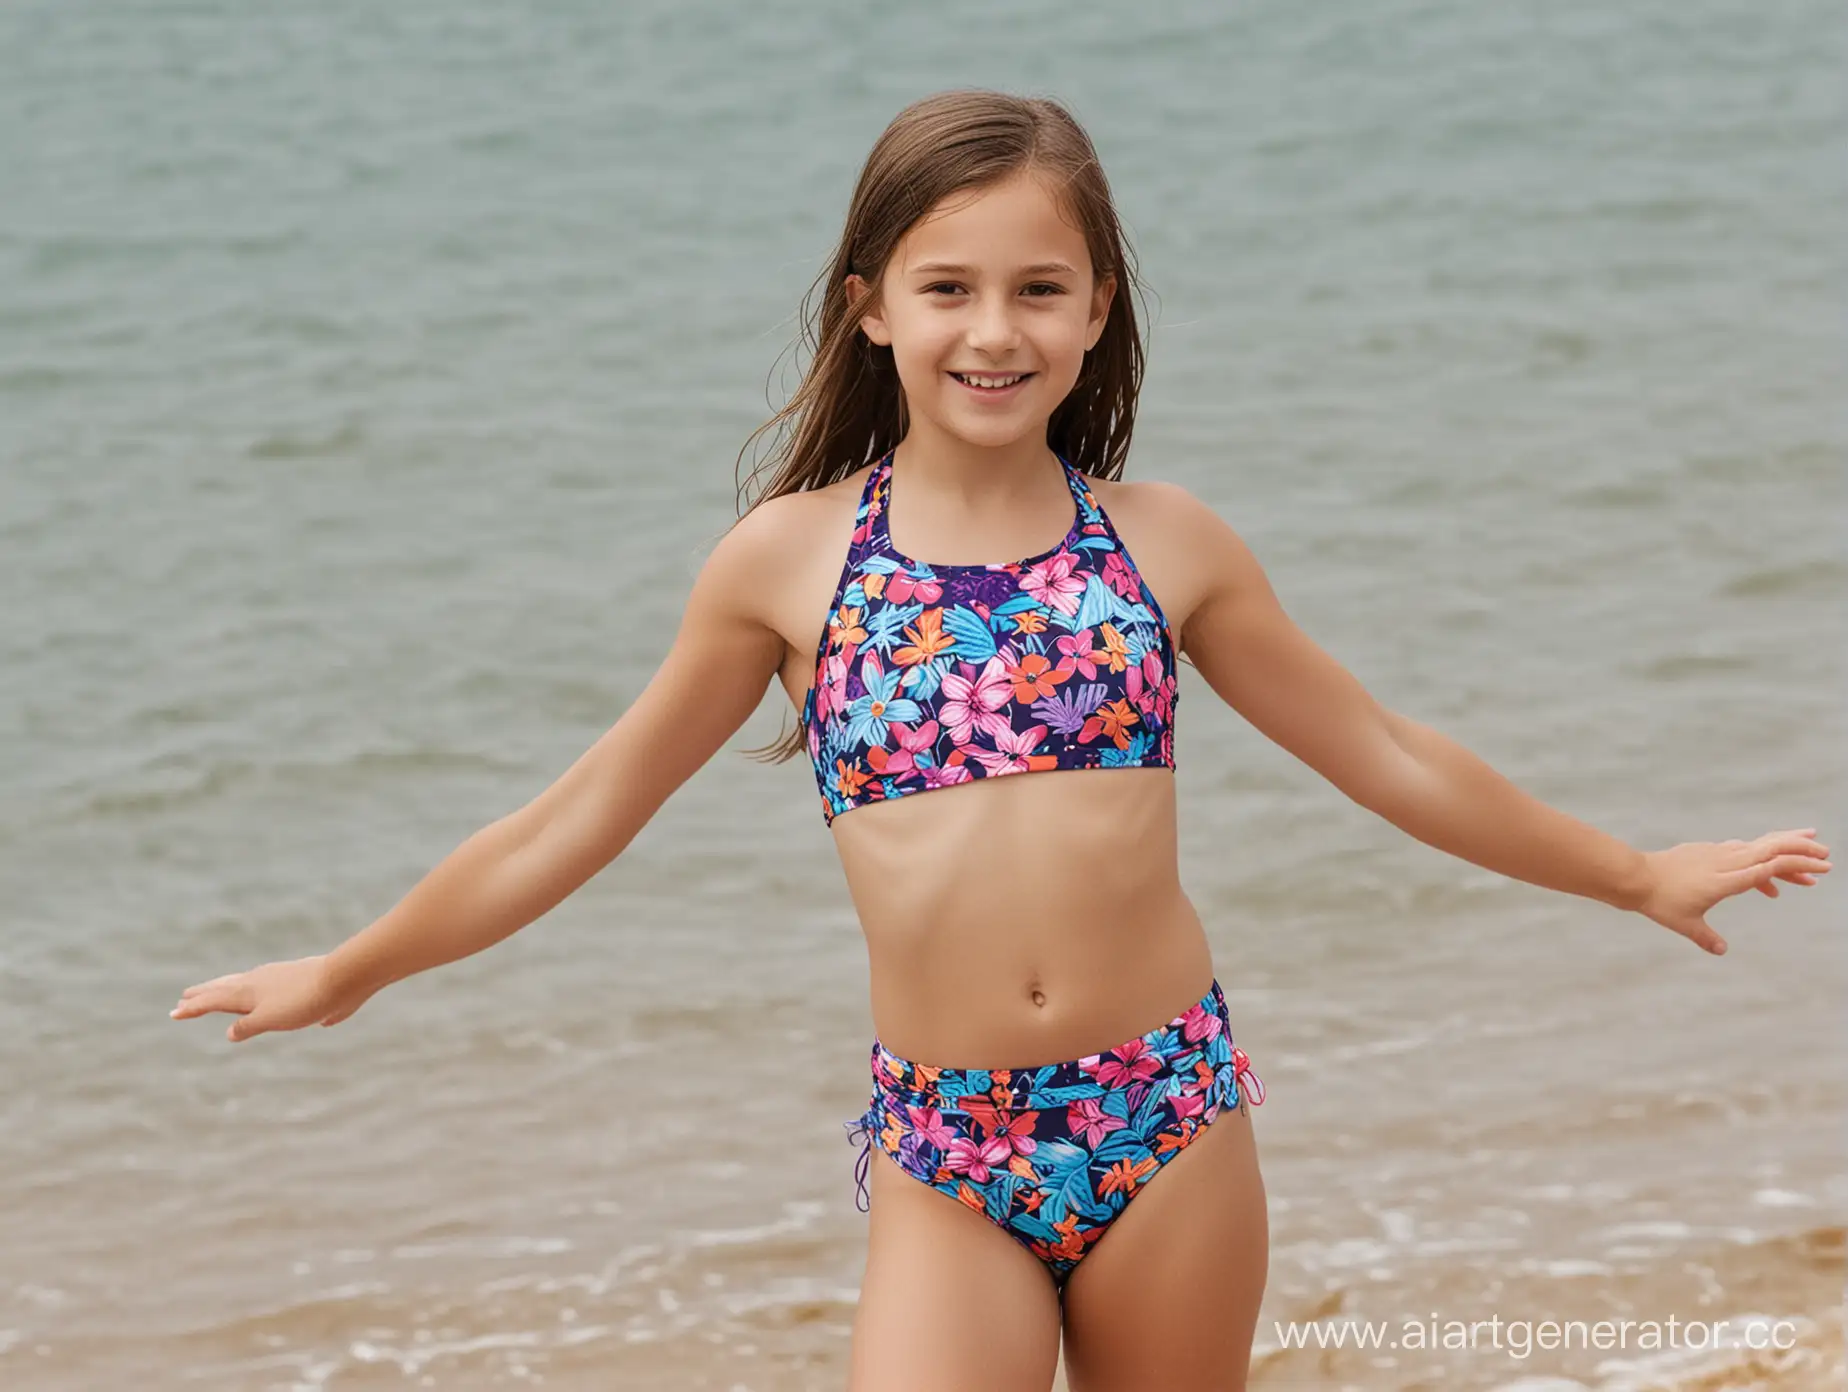 Adorable-10YearOld-Girl-Enjoying-Beach-Fun-in-Vibrant-Swimsuit